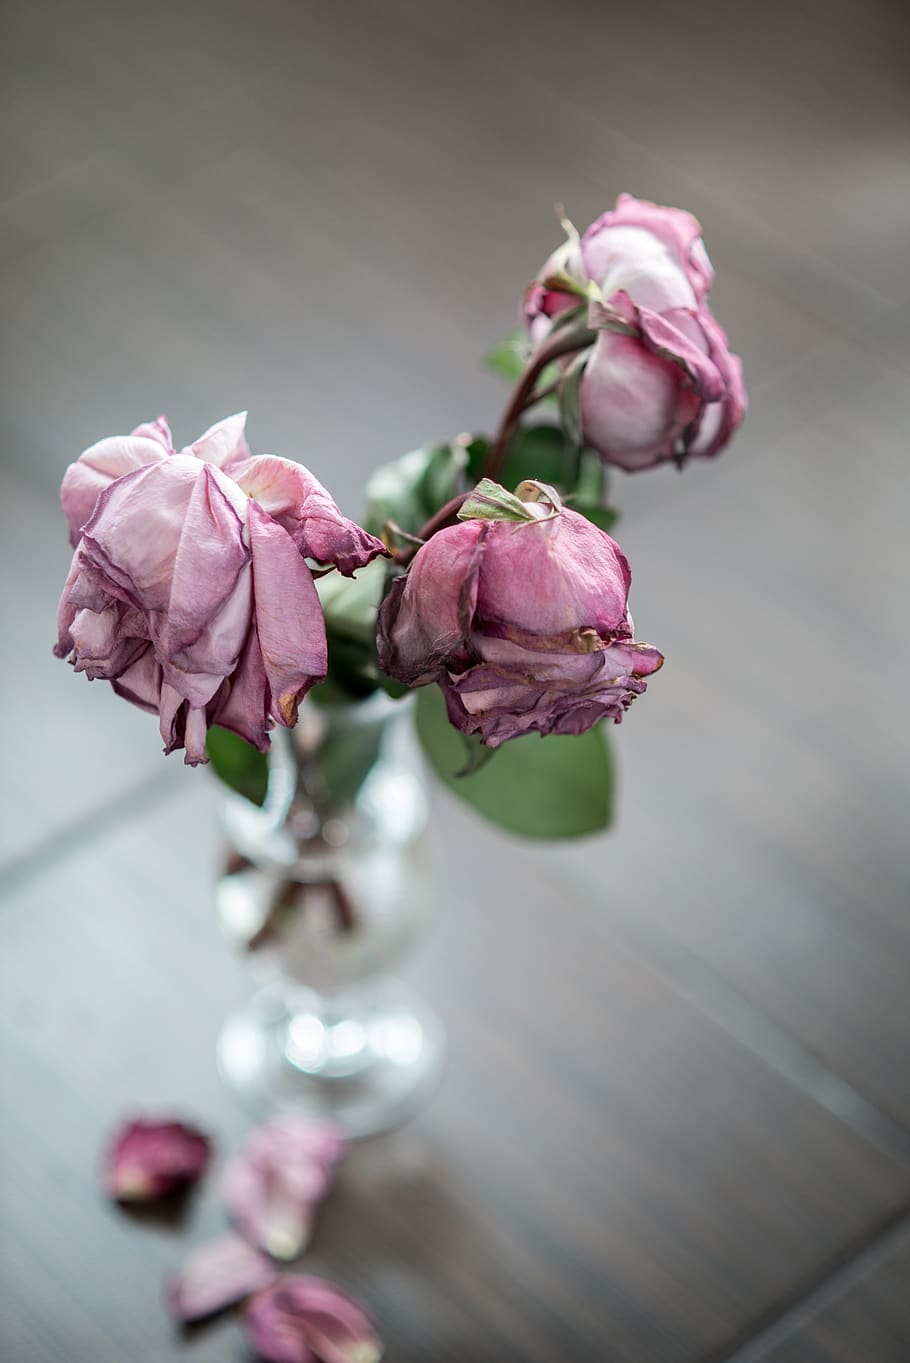 Rose, Vase, Dead, Dried Flowers, Petals, Pink, Sorrow, Pink Flower